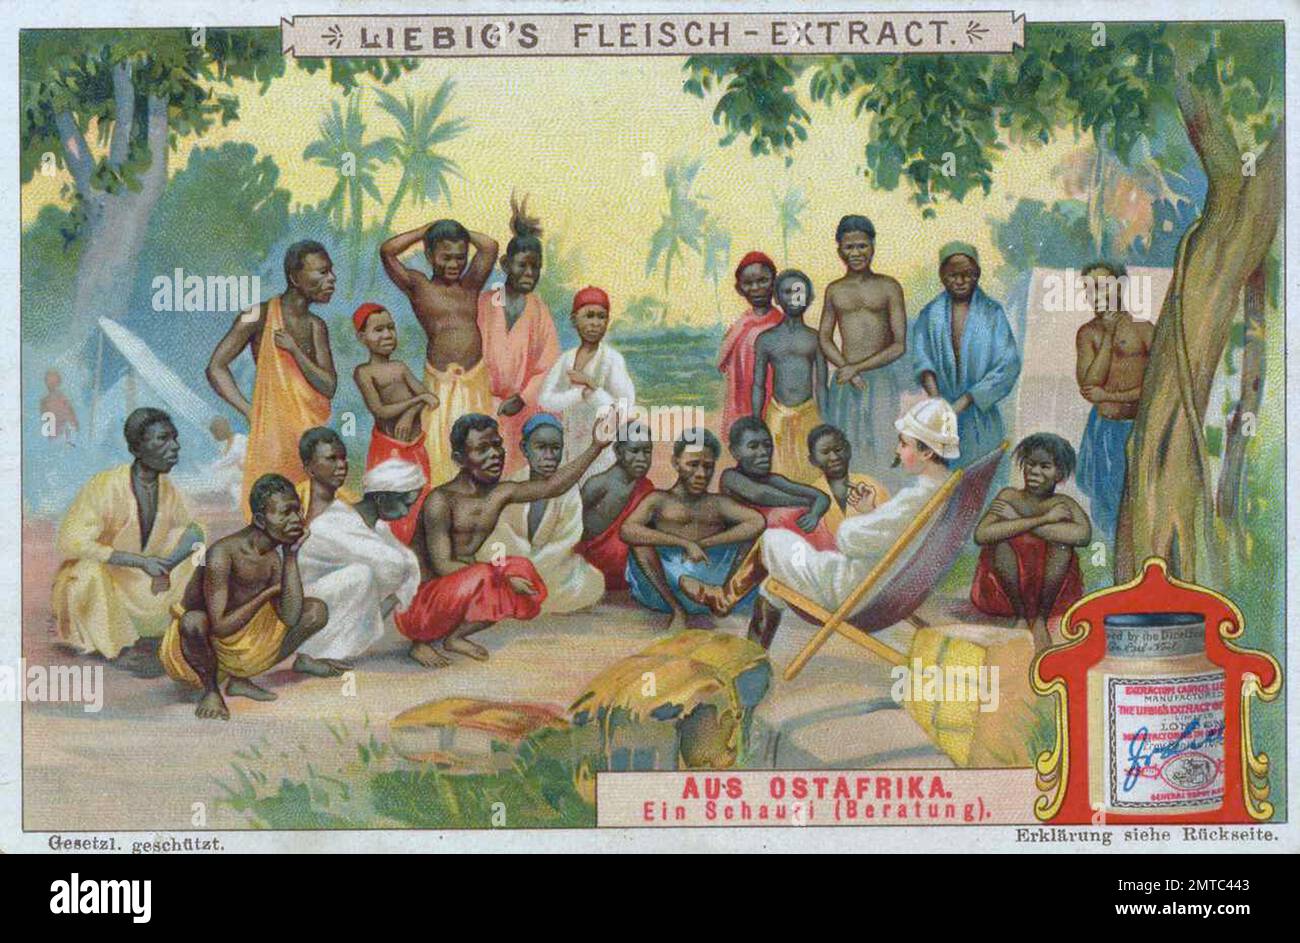 Bilderserie aus Ostafrika, ein Schauri, Beratung, digital restaurierte Reproduktion eines Sammelbildes von ca 1900, gemeinfrei, genaues Datum unbekannt  / Stock Photo